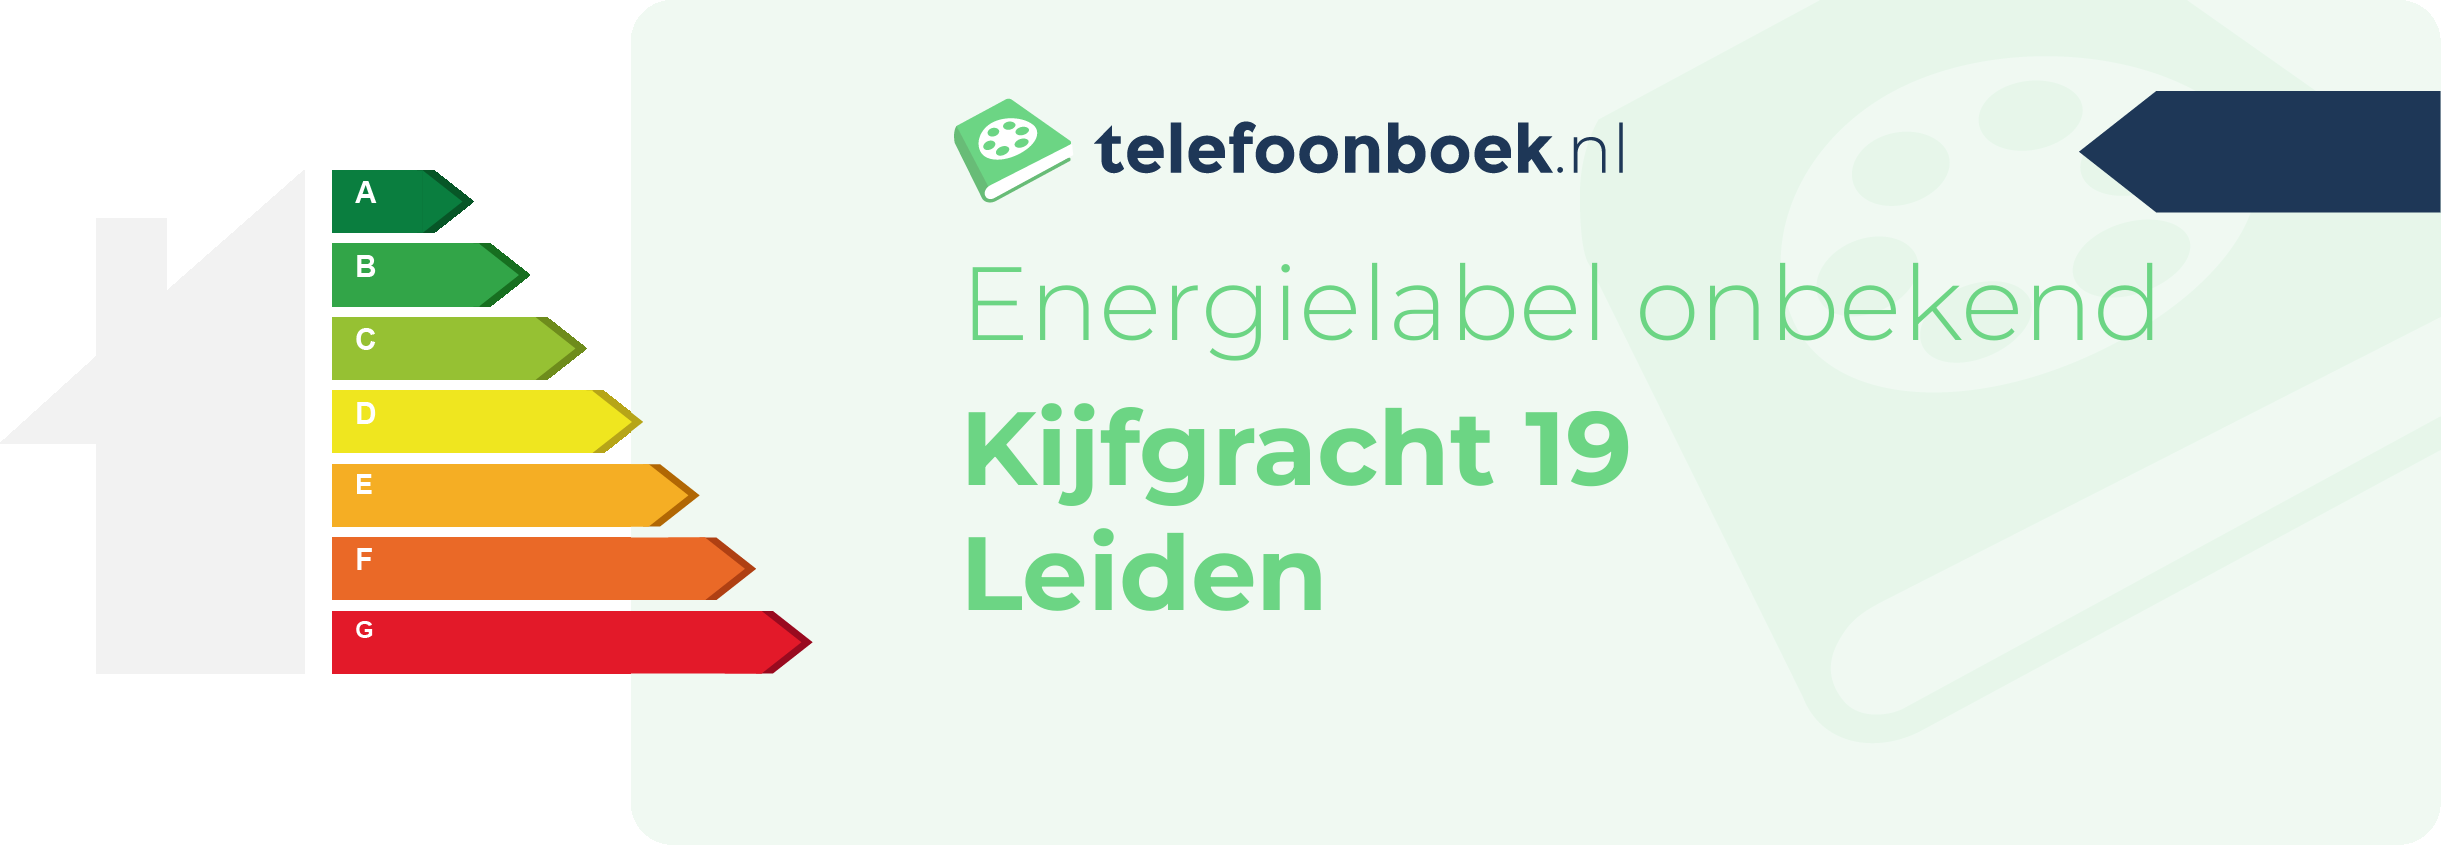 Energielabel Kijfgracht 19 Leiden